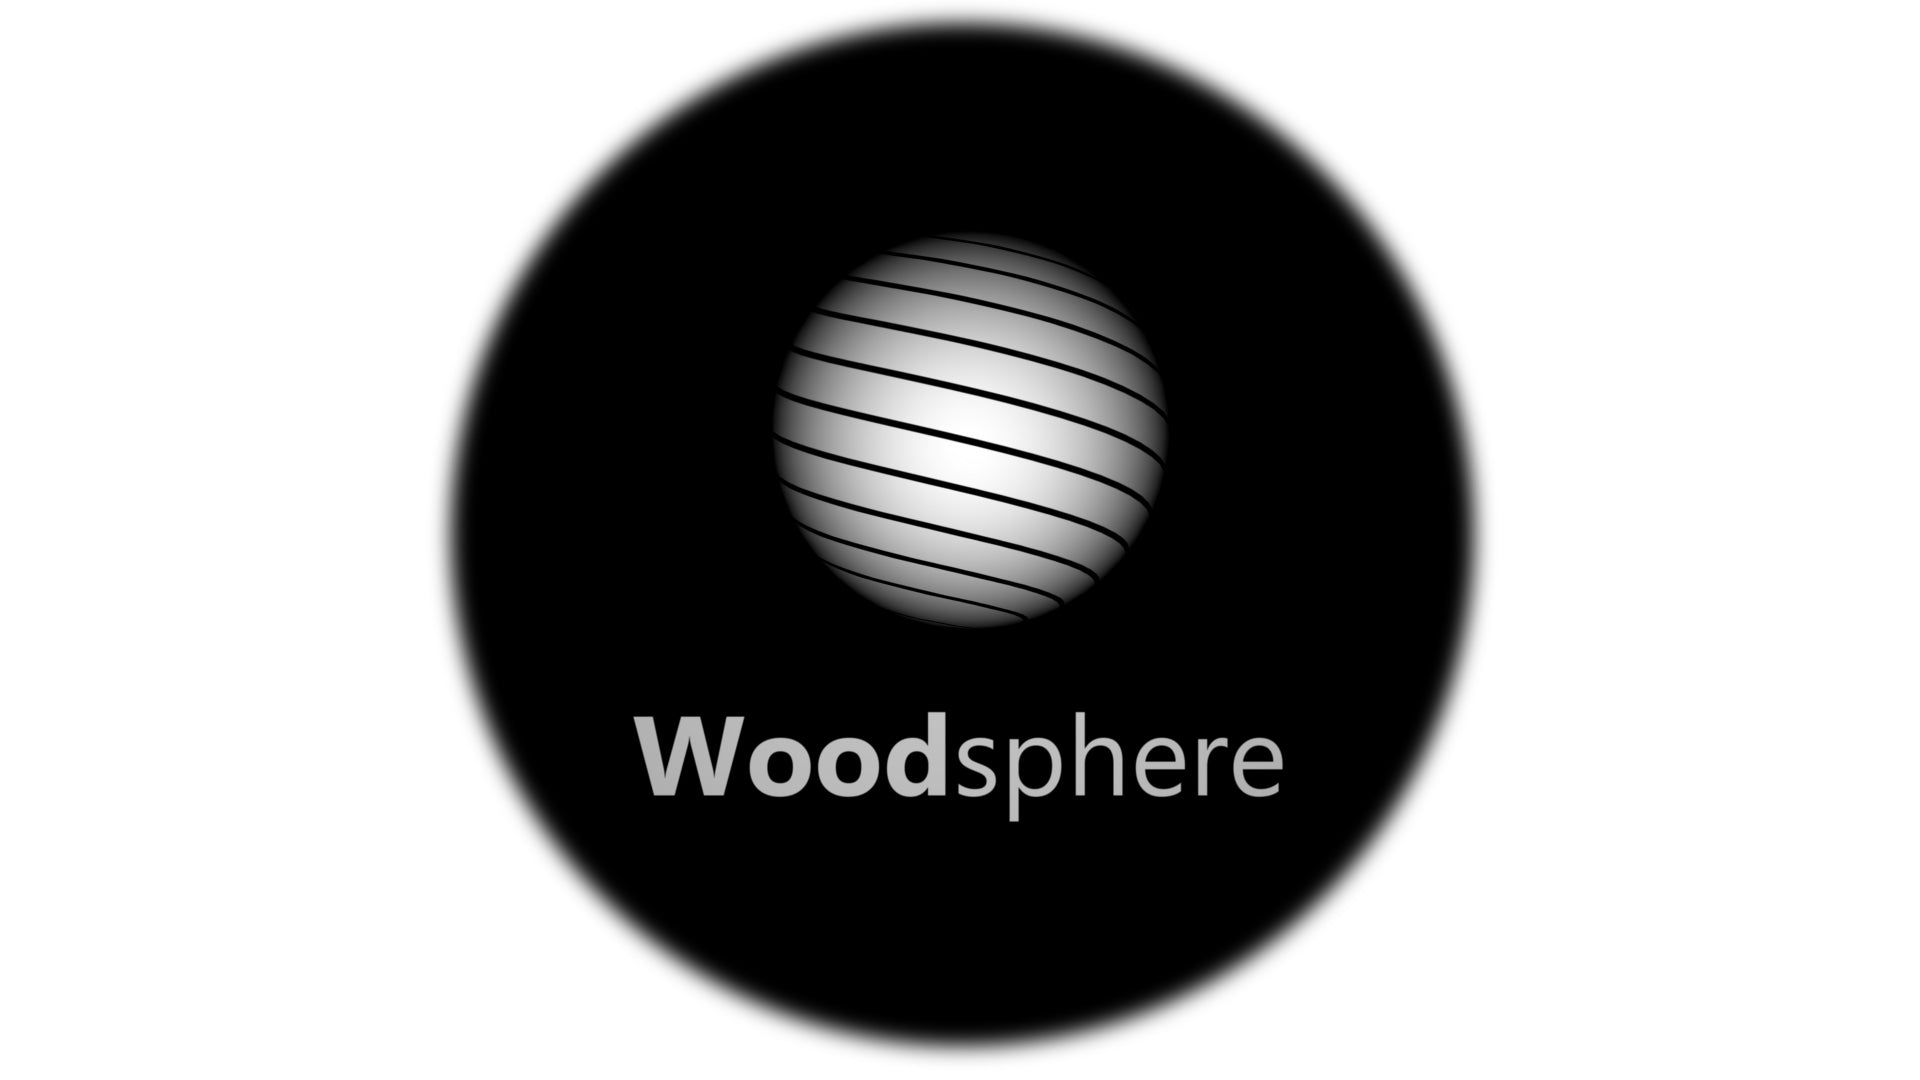 TheWoodsphere